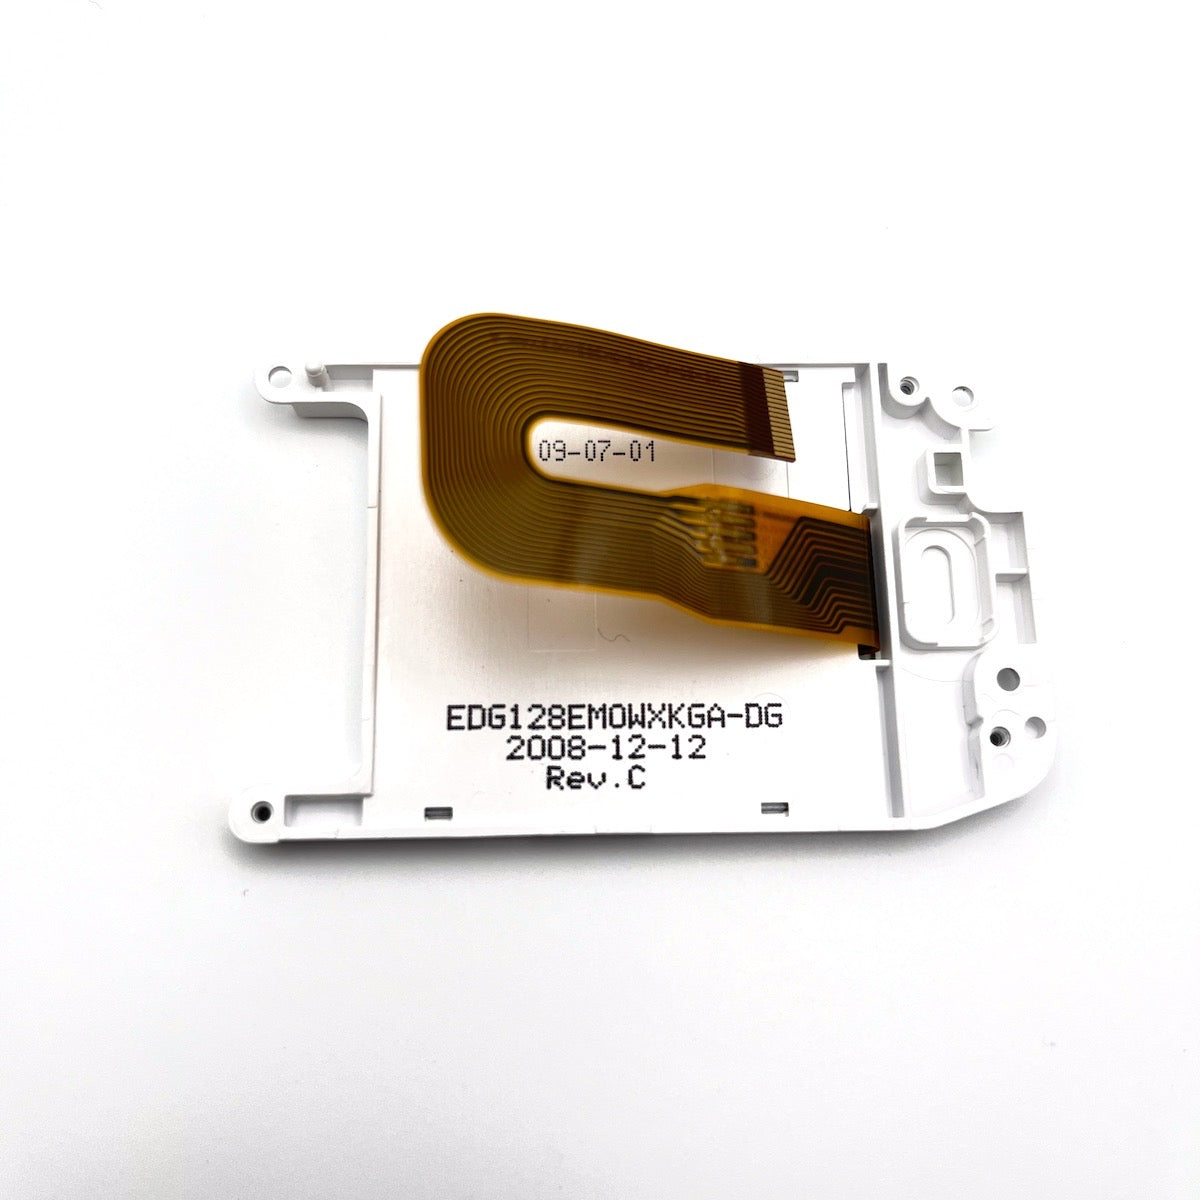 LCD for Iridium 9555 CMF2P0403-E FC182-1-C-P3-E   genuine part repair Used